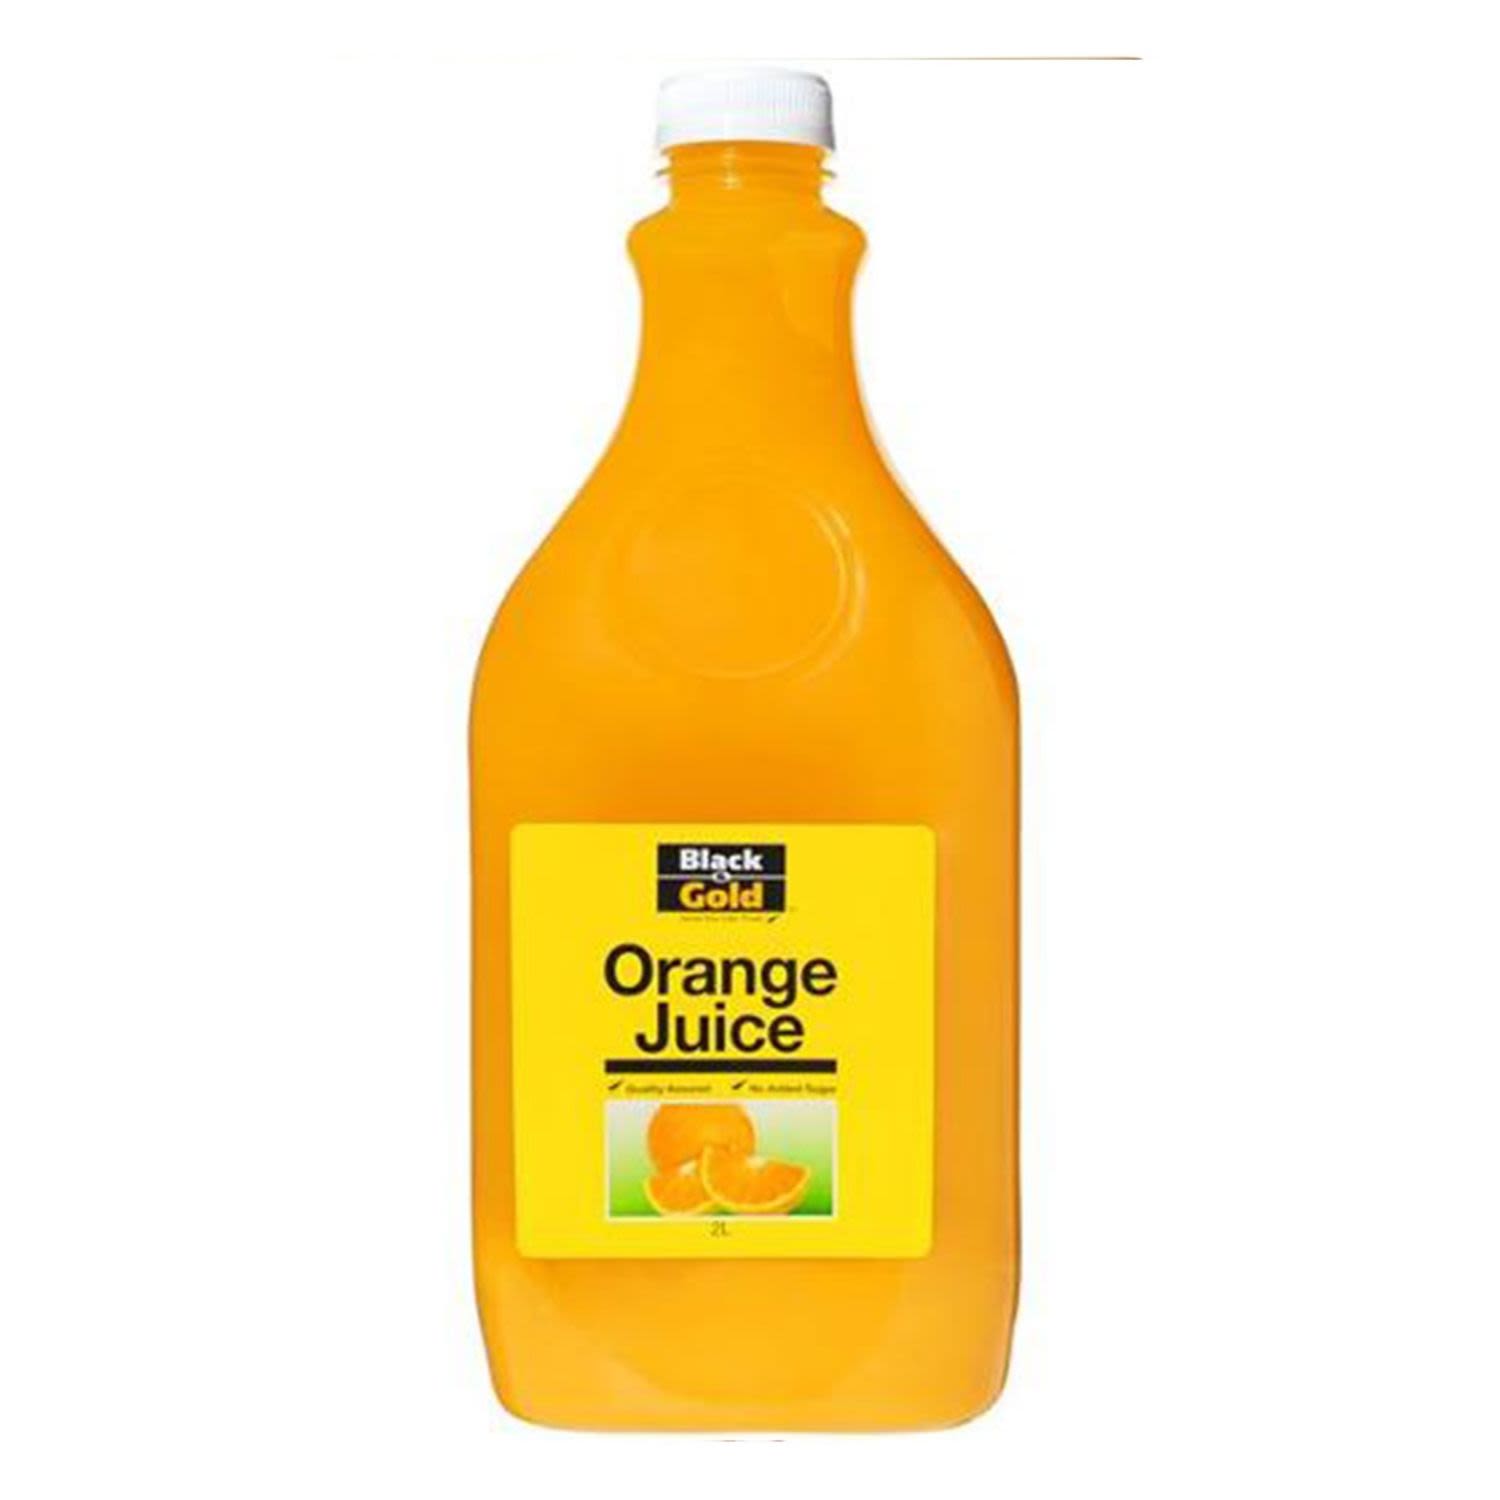 Black & Gold Orange Juice, 2 Litre